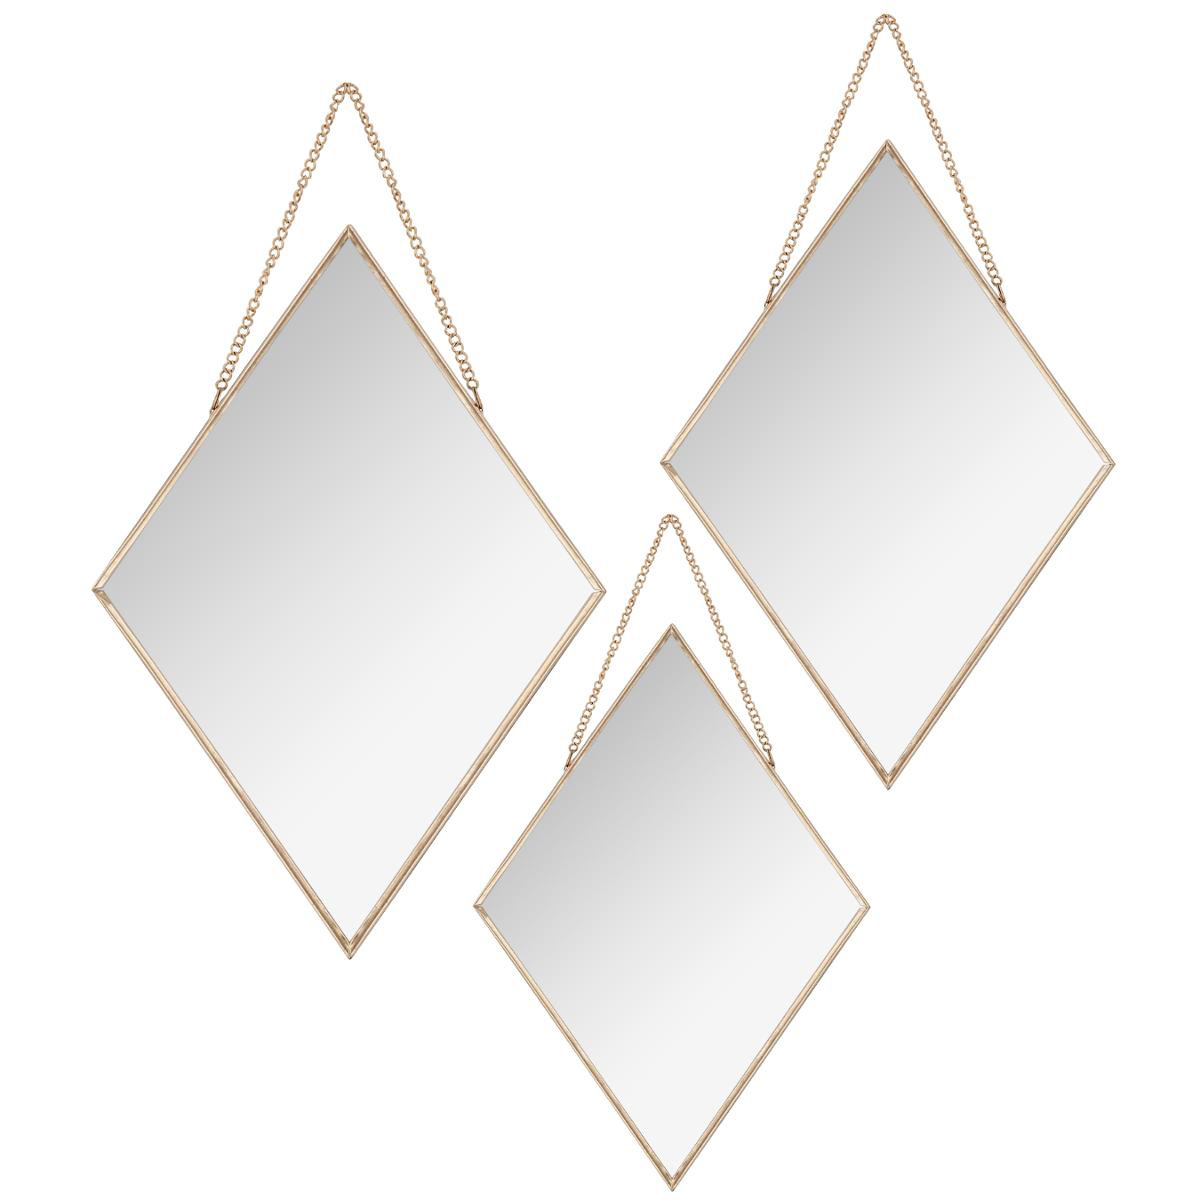 Διακοσμητικοί Καθρέφτες Τοίχου (Σετ 3τμχ) A-S Diamond Gold 158119A 175302